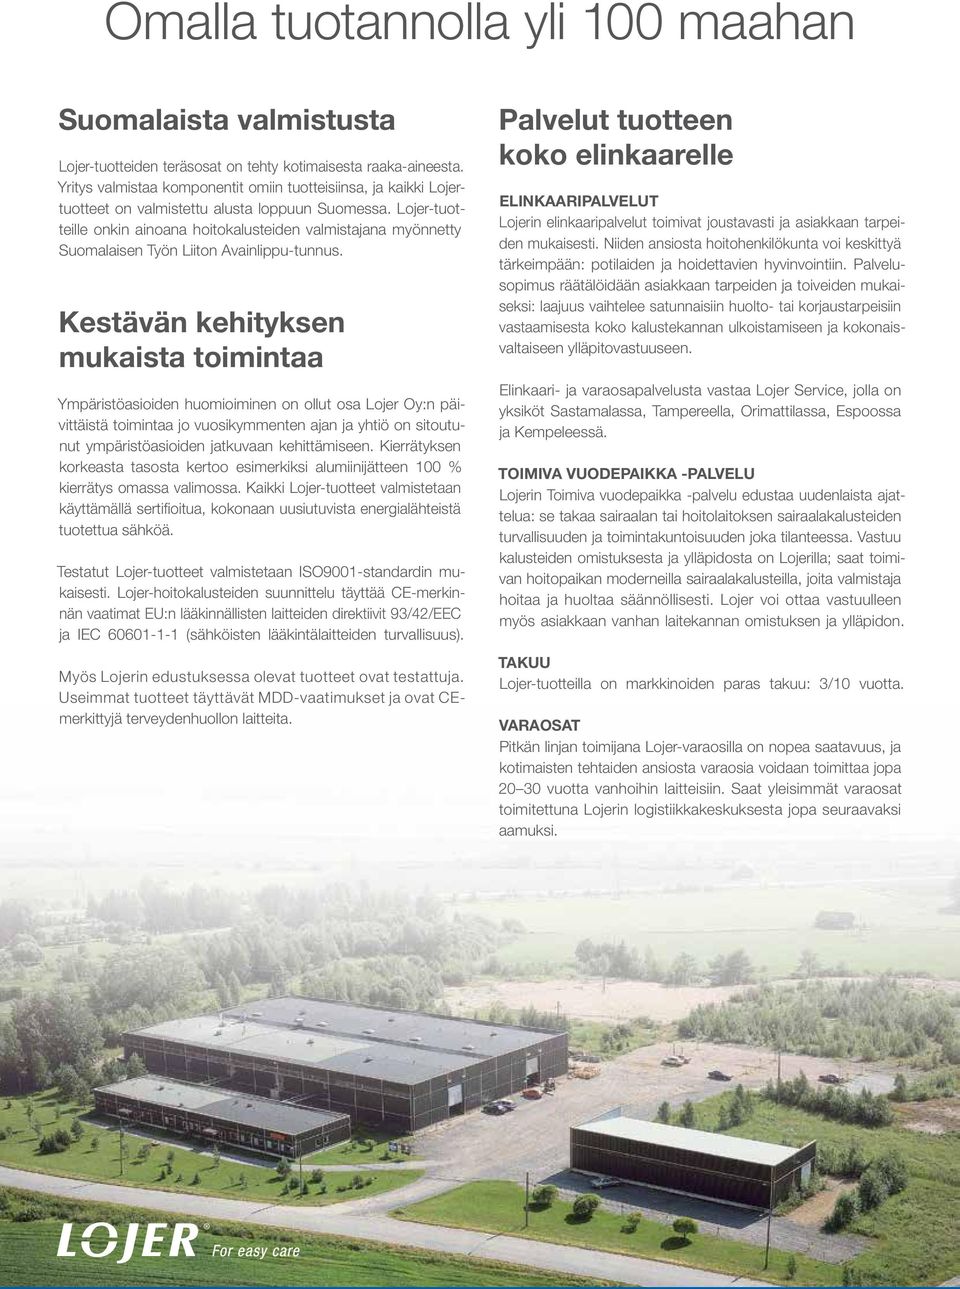 Lojer-tuotteille onkin ainoana hoitokalusteiden valmistajana myönnetty Suomalaisen Työn Liiton Avainlippu-tunnus.